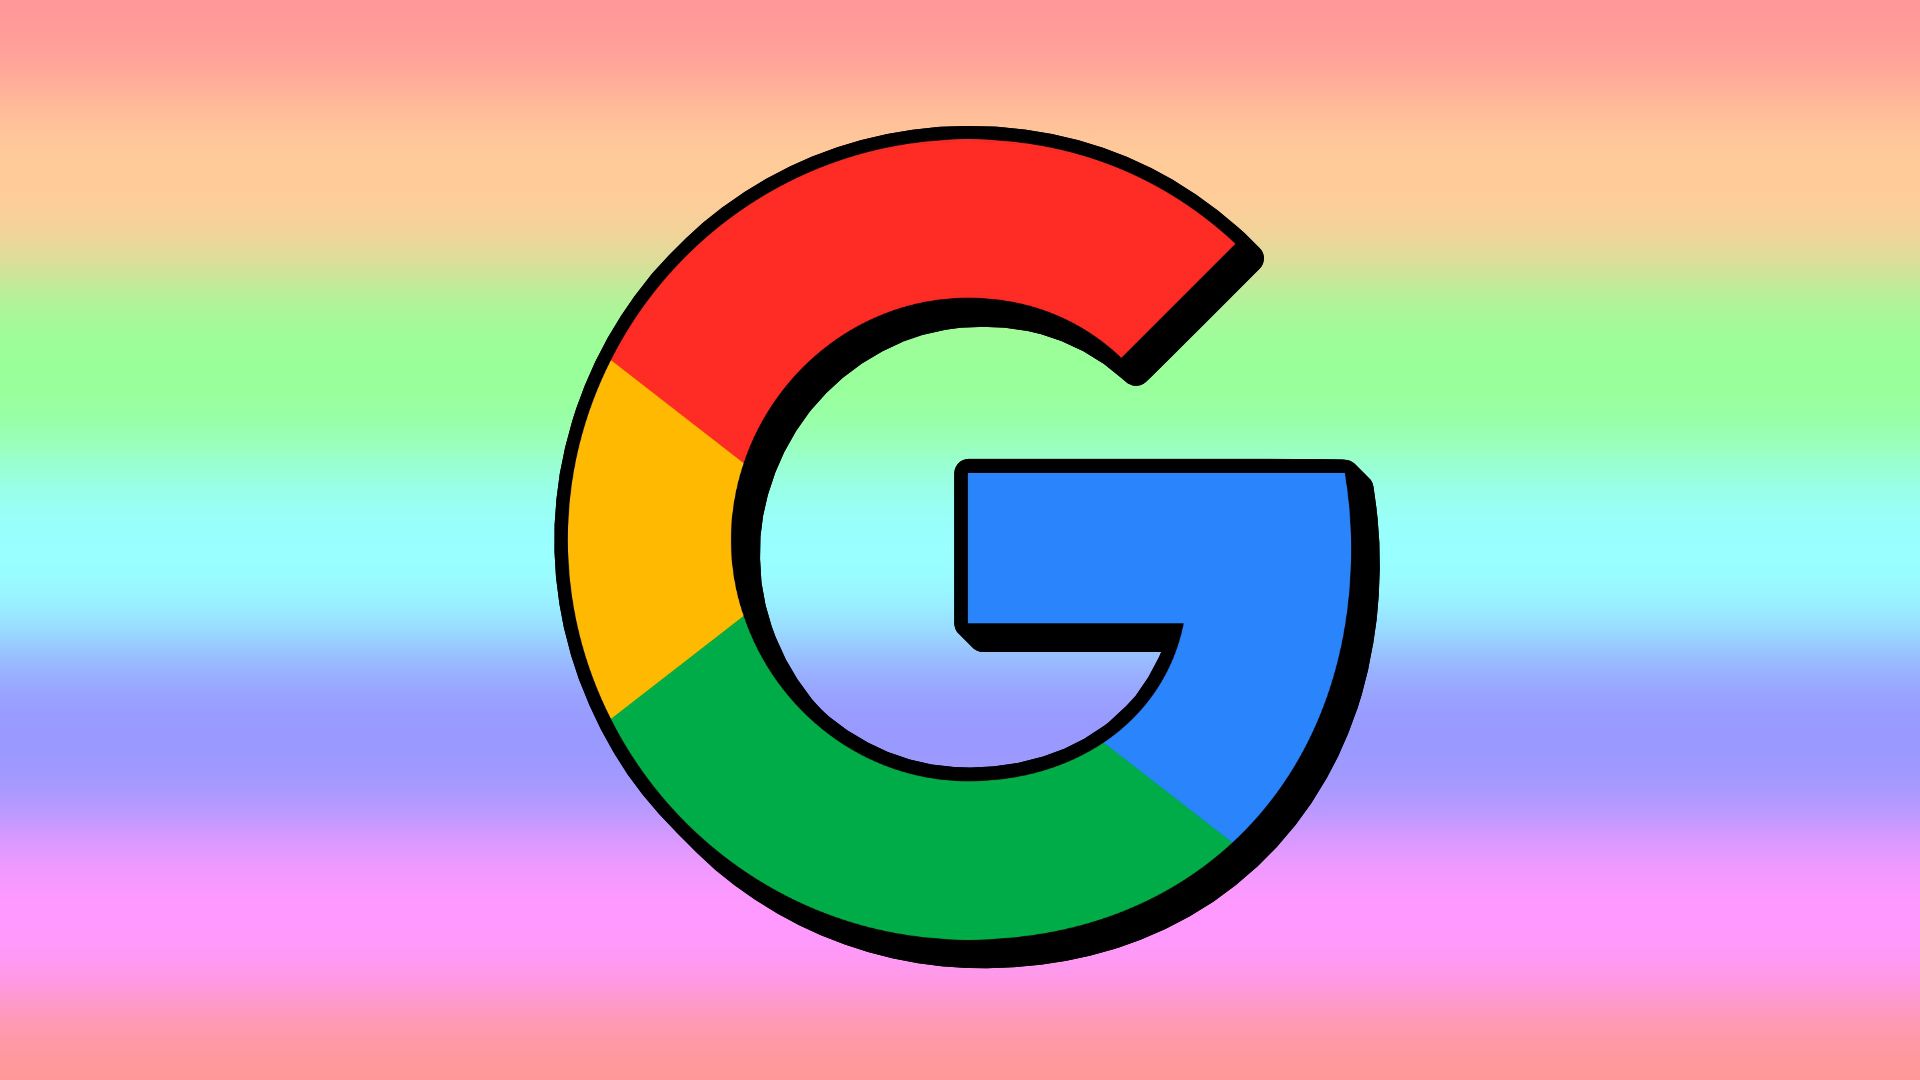 Jogos do Google: Descubra os games escondidos criados pelo Google